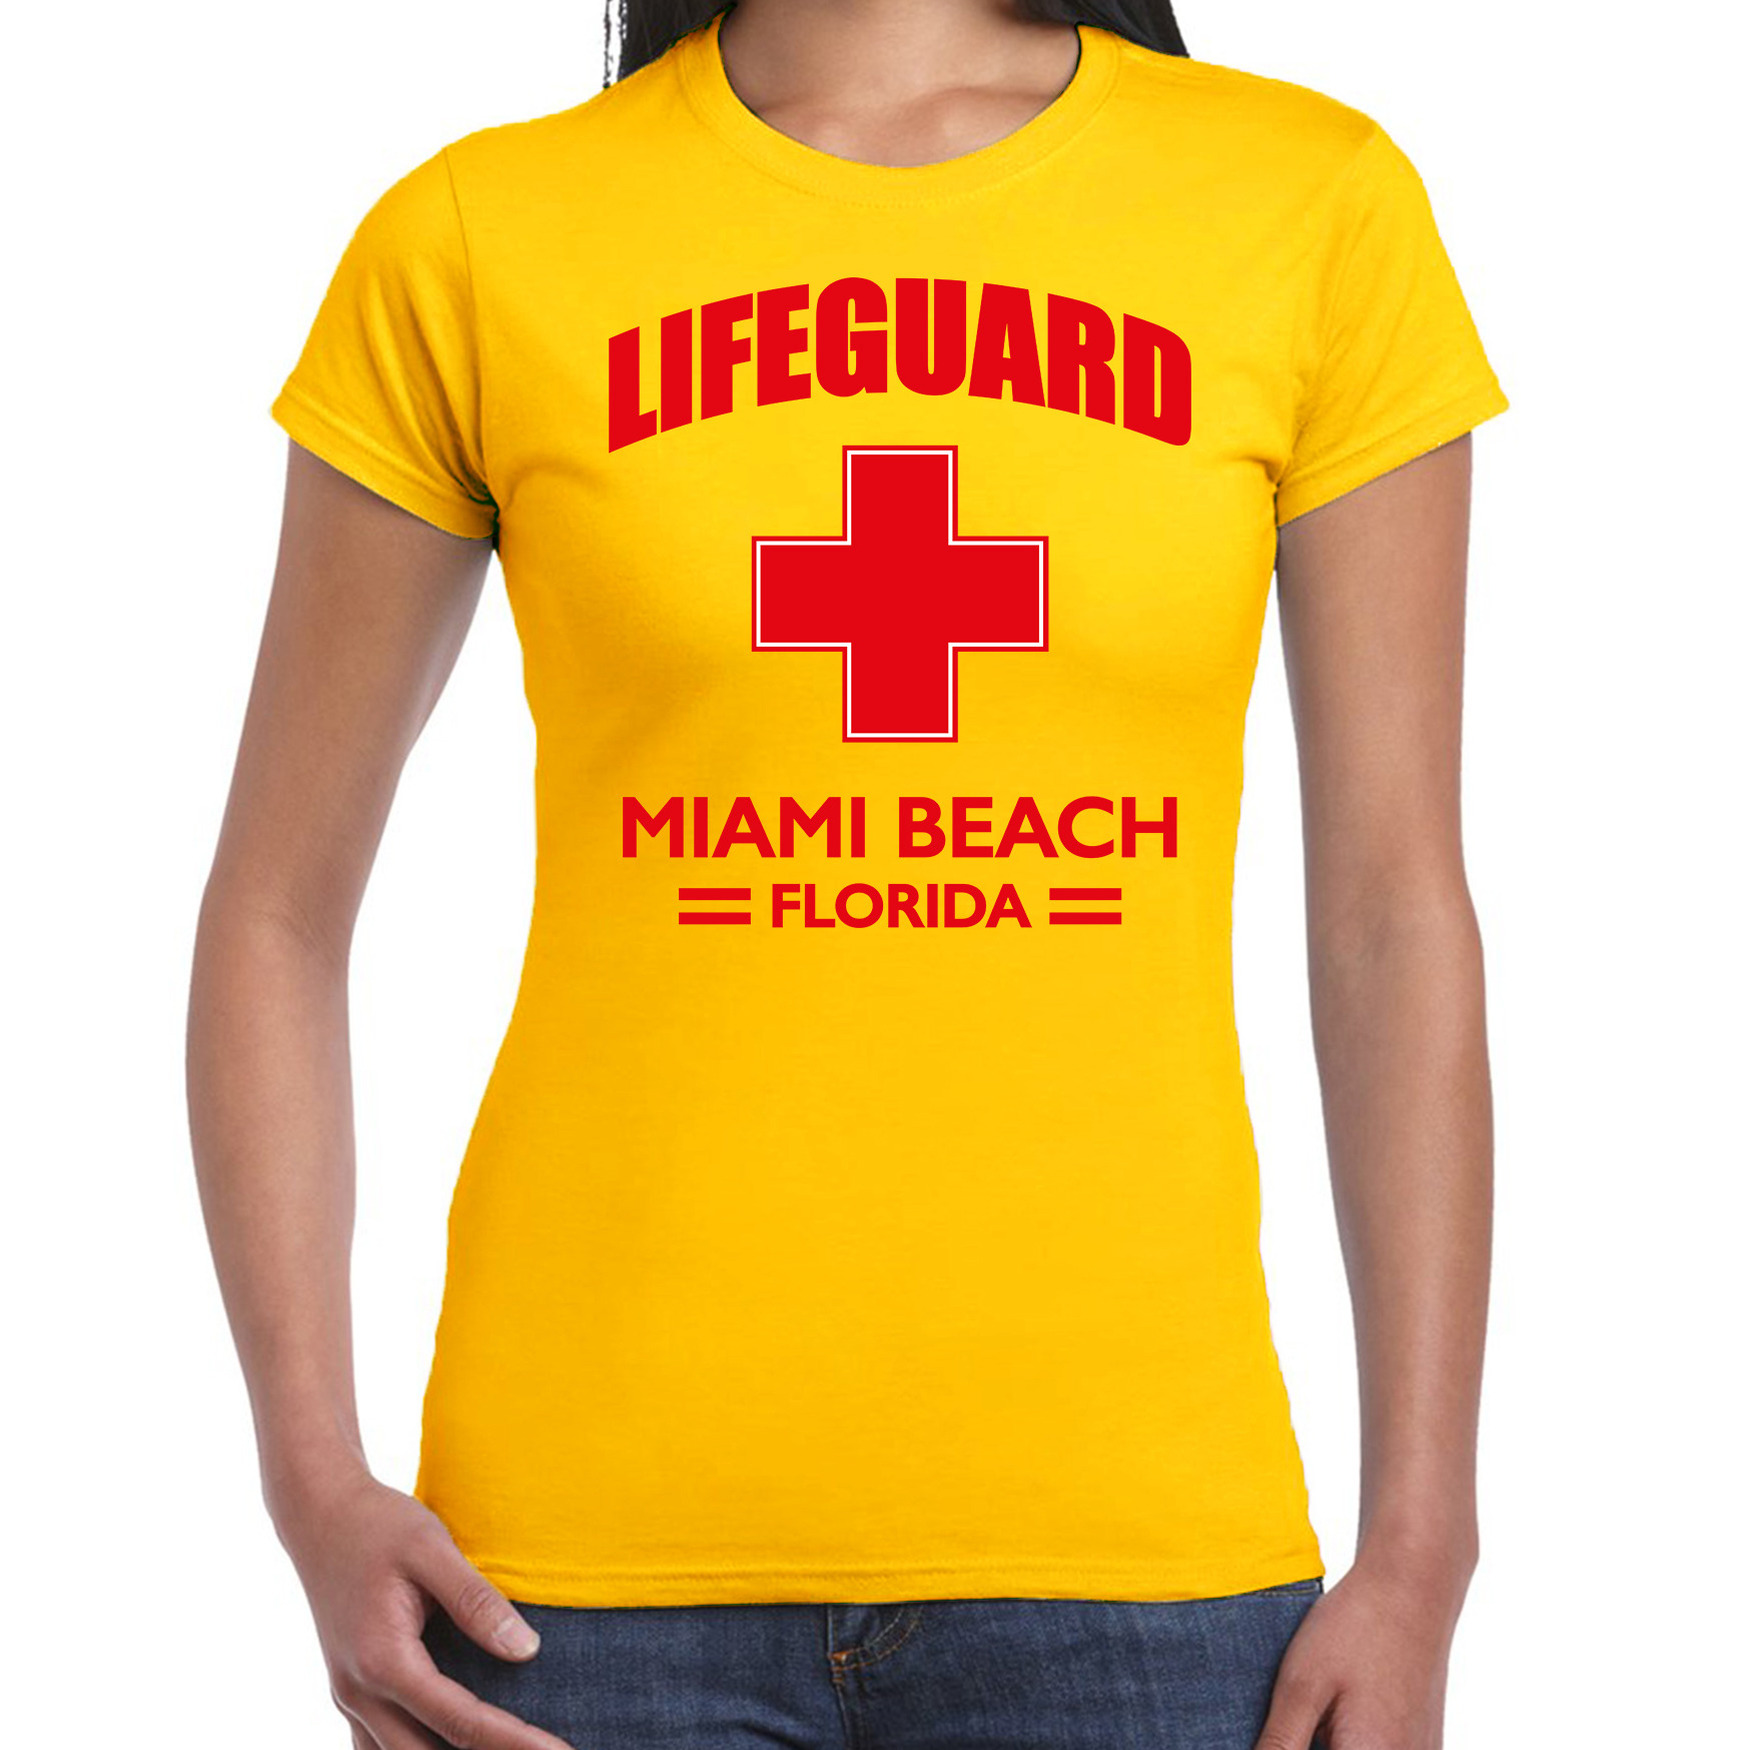 Lifeguard/ strandwacht verkleed t-shirt Lifeguard Miami Beach Florida geel voor dames